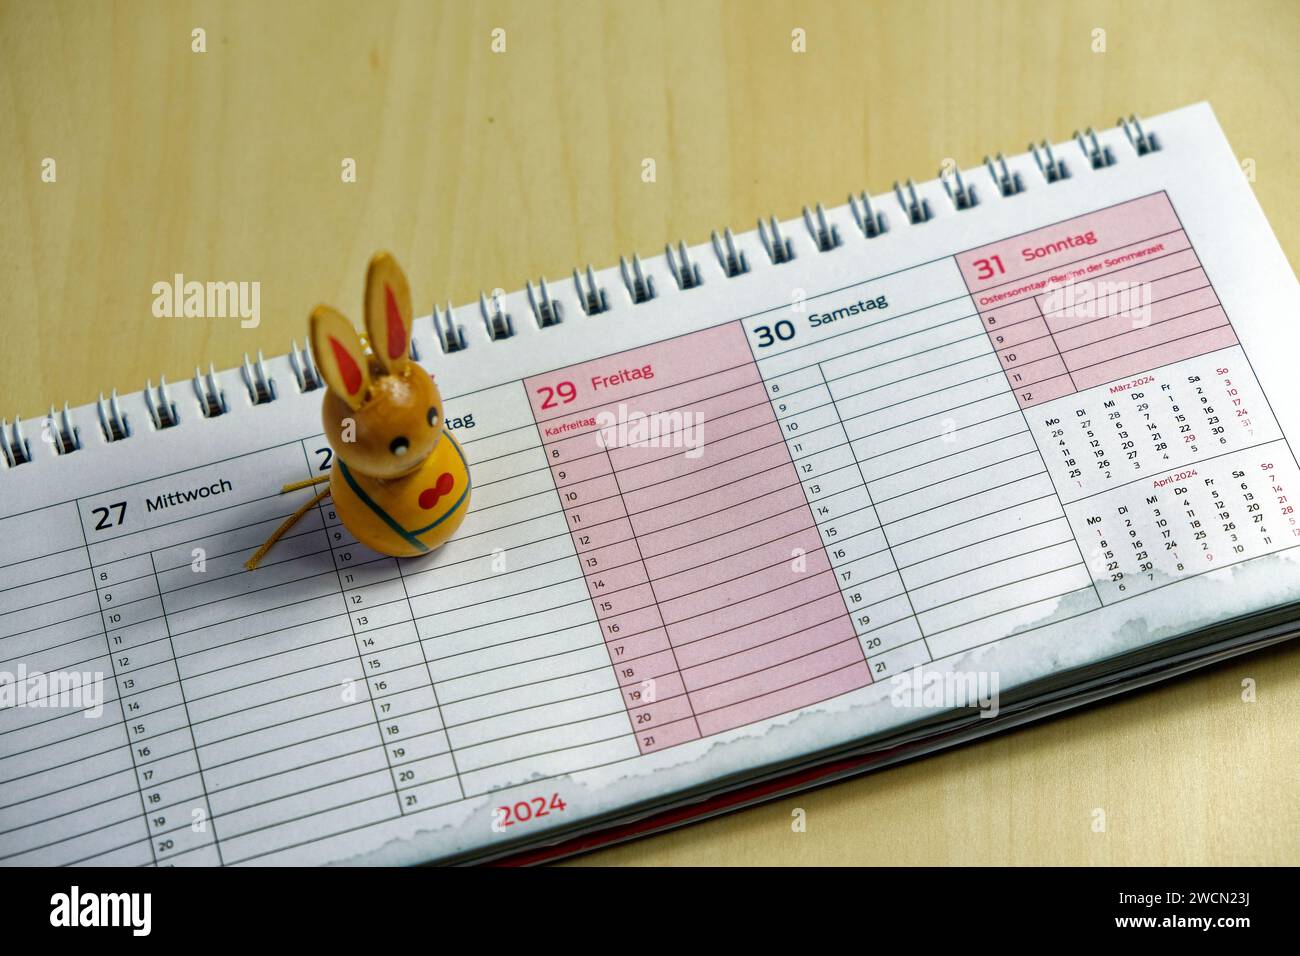 Symbolisches Bild der Osterferien: Osterhase auf einem Kalender mit osterdatum 2024 Stockfoto